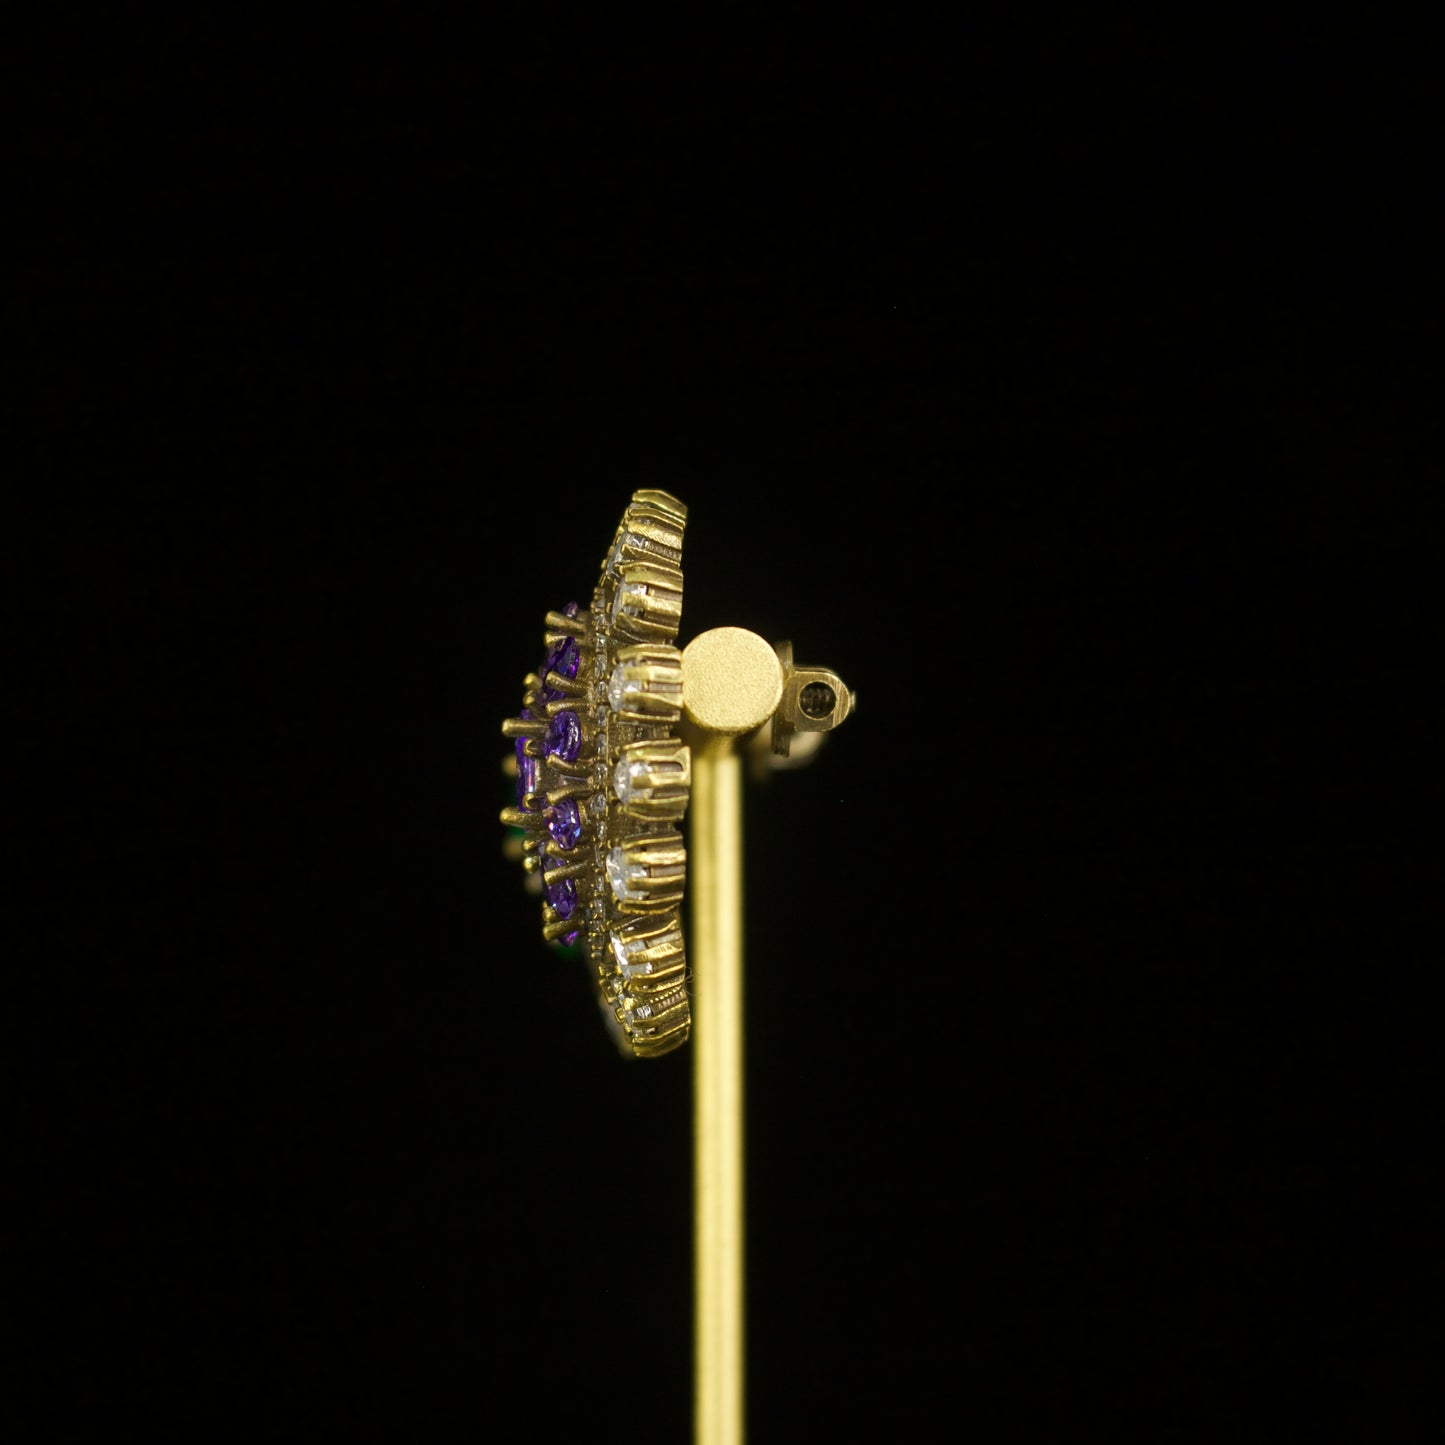 Glistening Victorian Stud earrings in screw back style